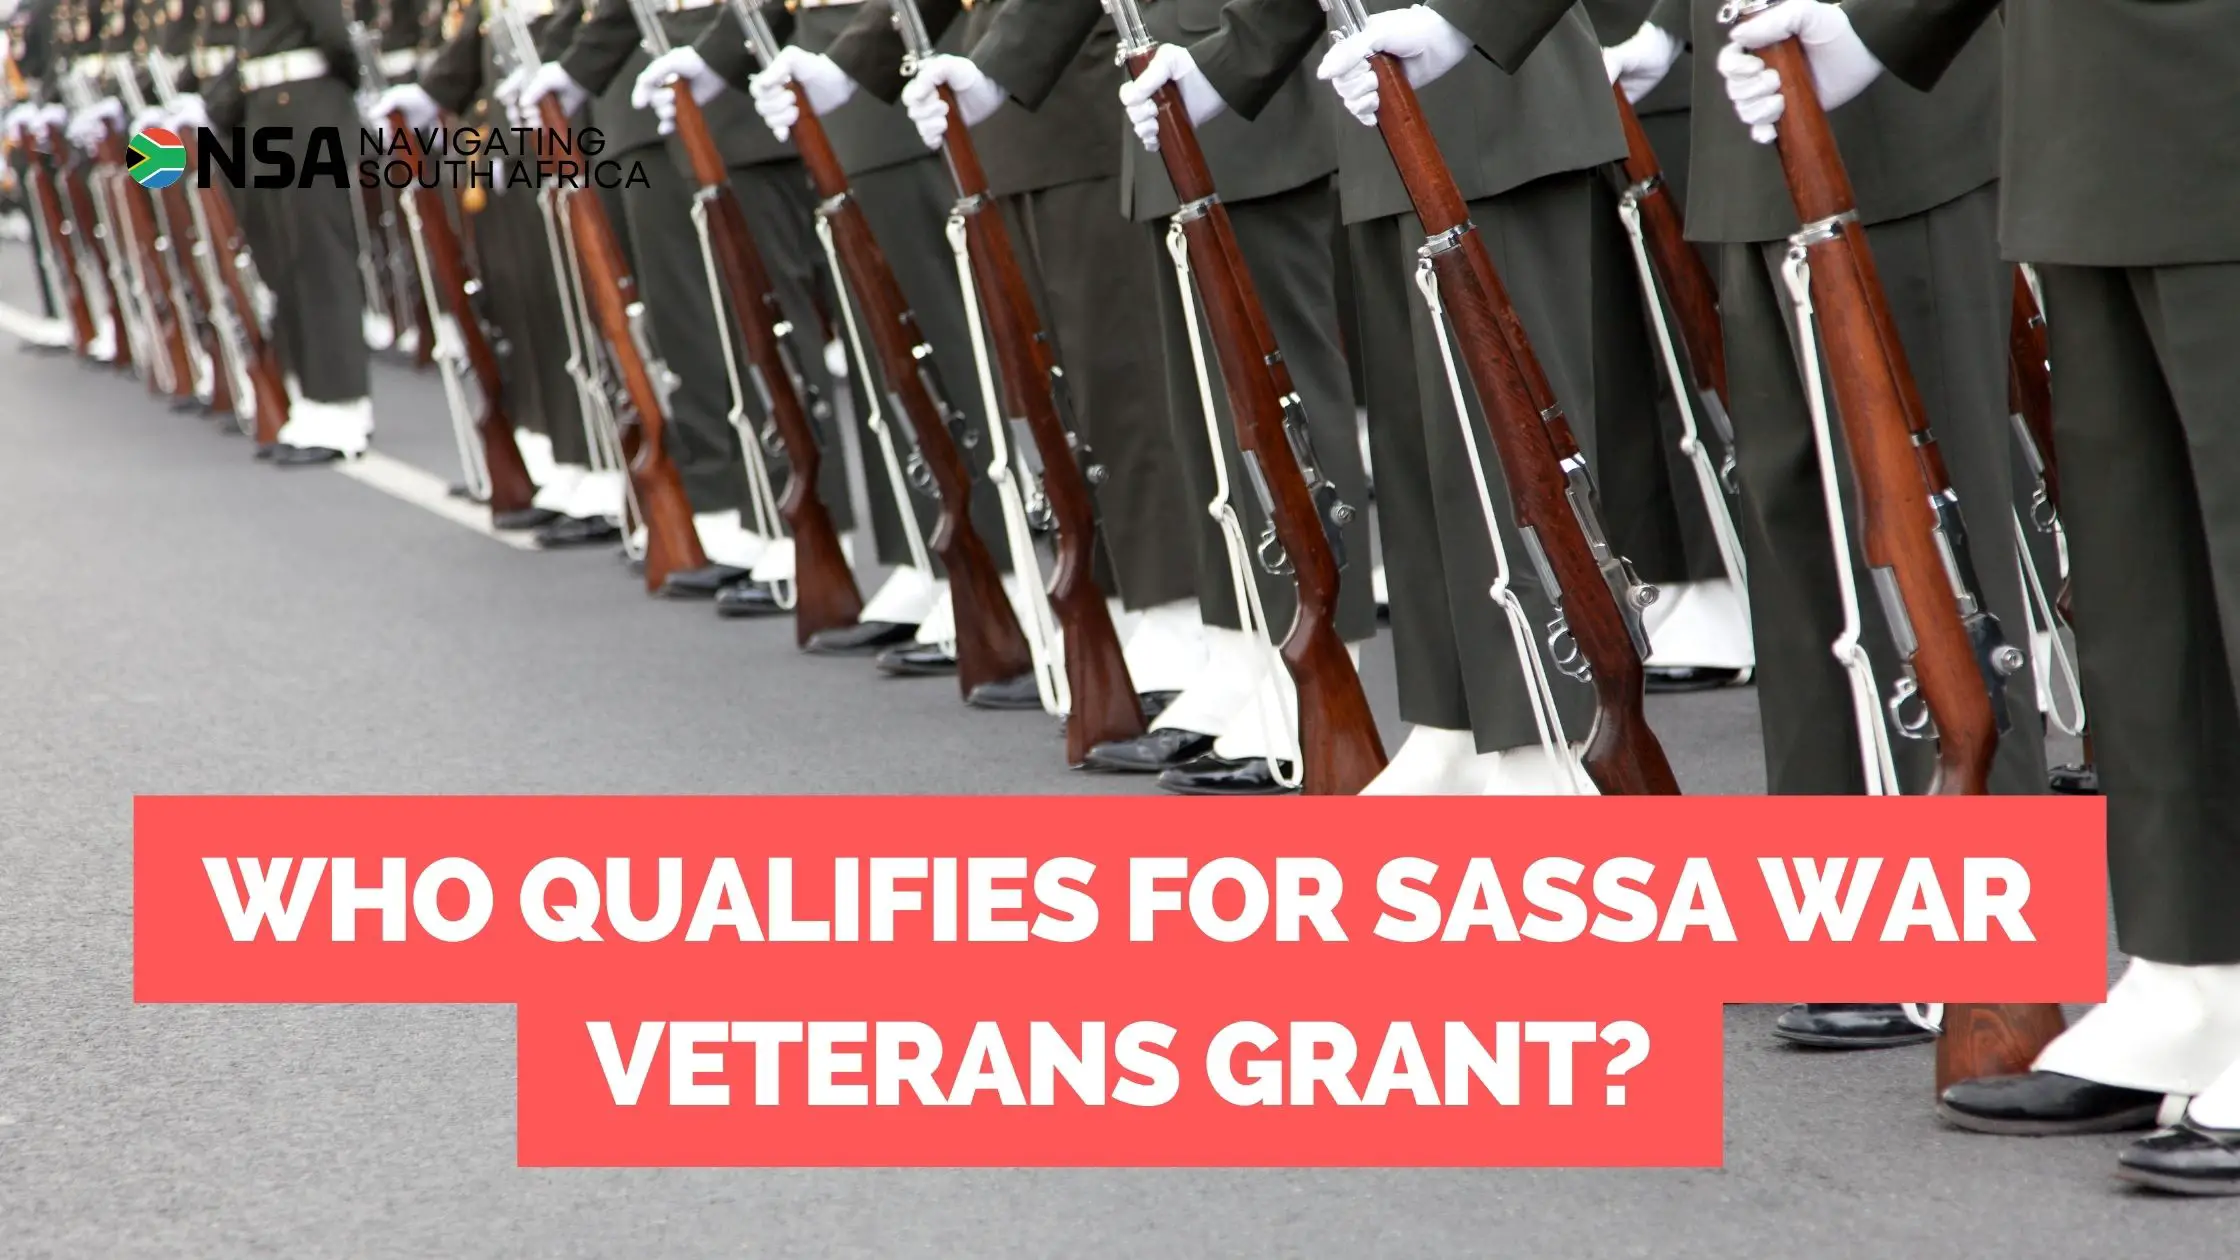 SASSA War Veterans Grant